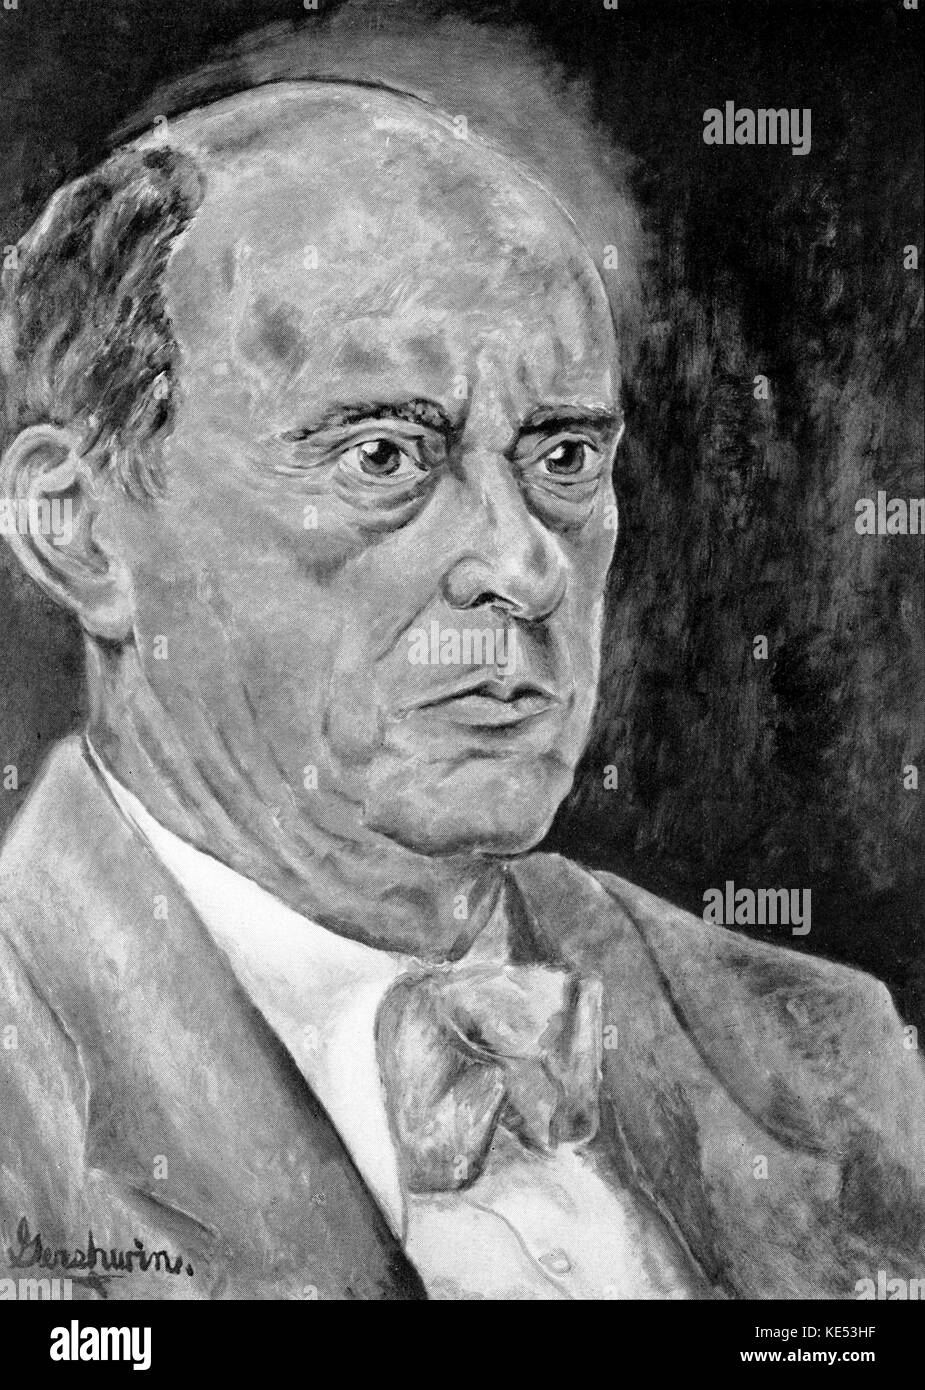 George Gershwin 's pintura ofArnold Schoenberg 1937 (compositor austríaco, el 13 de abril de 1874 - 13 de julio de 1951). GG: compositor y pianista estadounidense, 26 de septiembre de 1898 - 11 de julio de 1937 Foto de stock